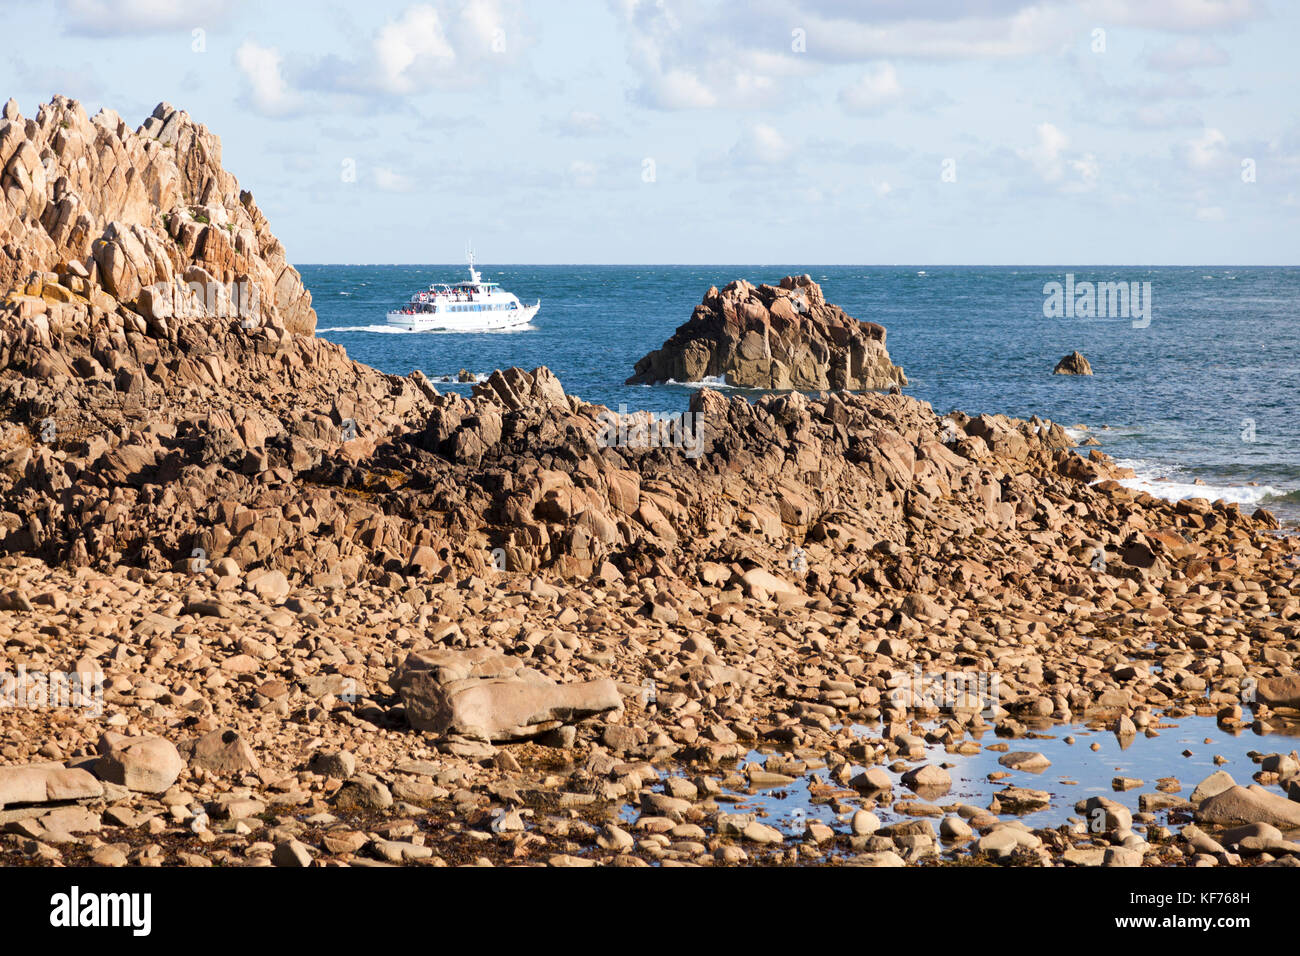 Die Insel Bréhat Entdeckung aus dem Meer (Bretagne). Es ist möglich, durch die Einführung einer 45 Minuten zu erhalten lange kommentierte Reise auf die Insel. Stockfoto